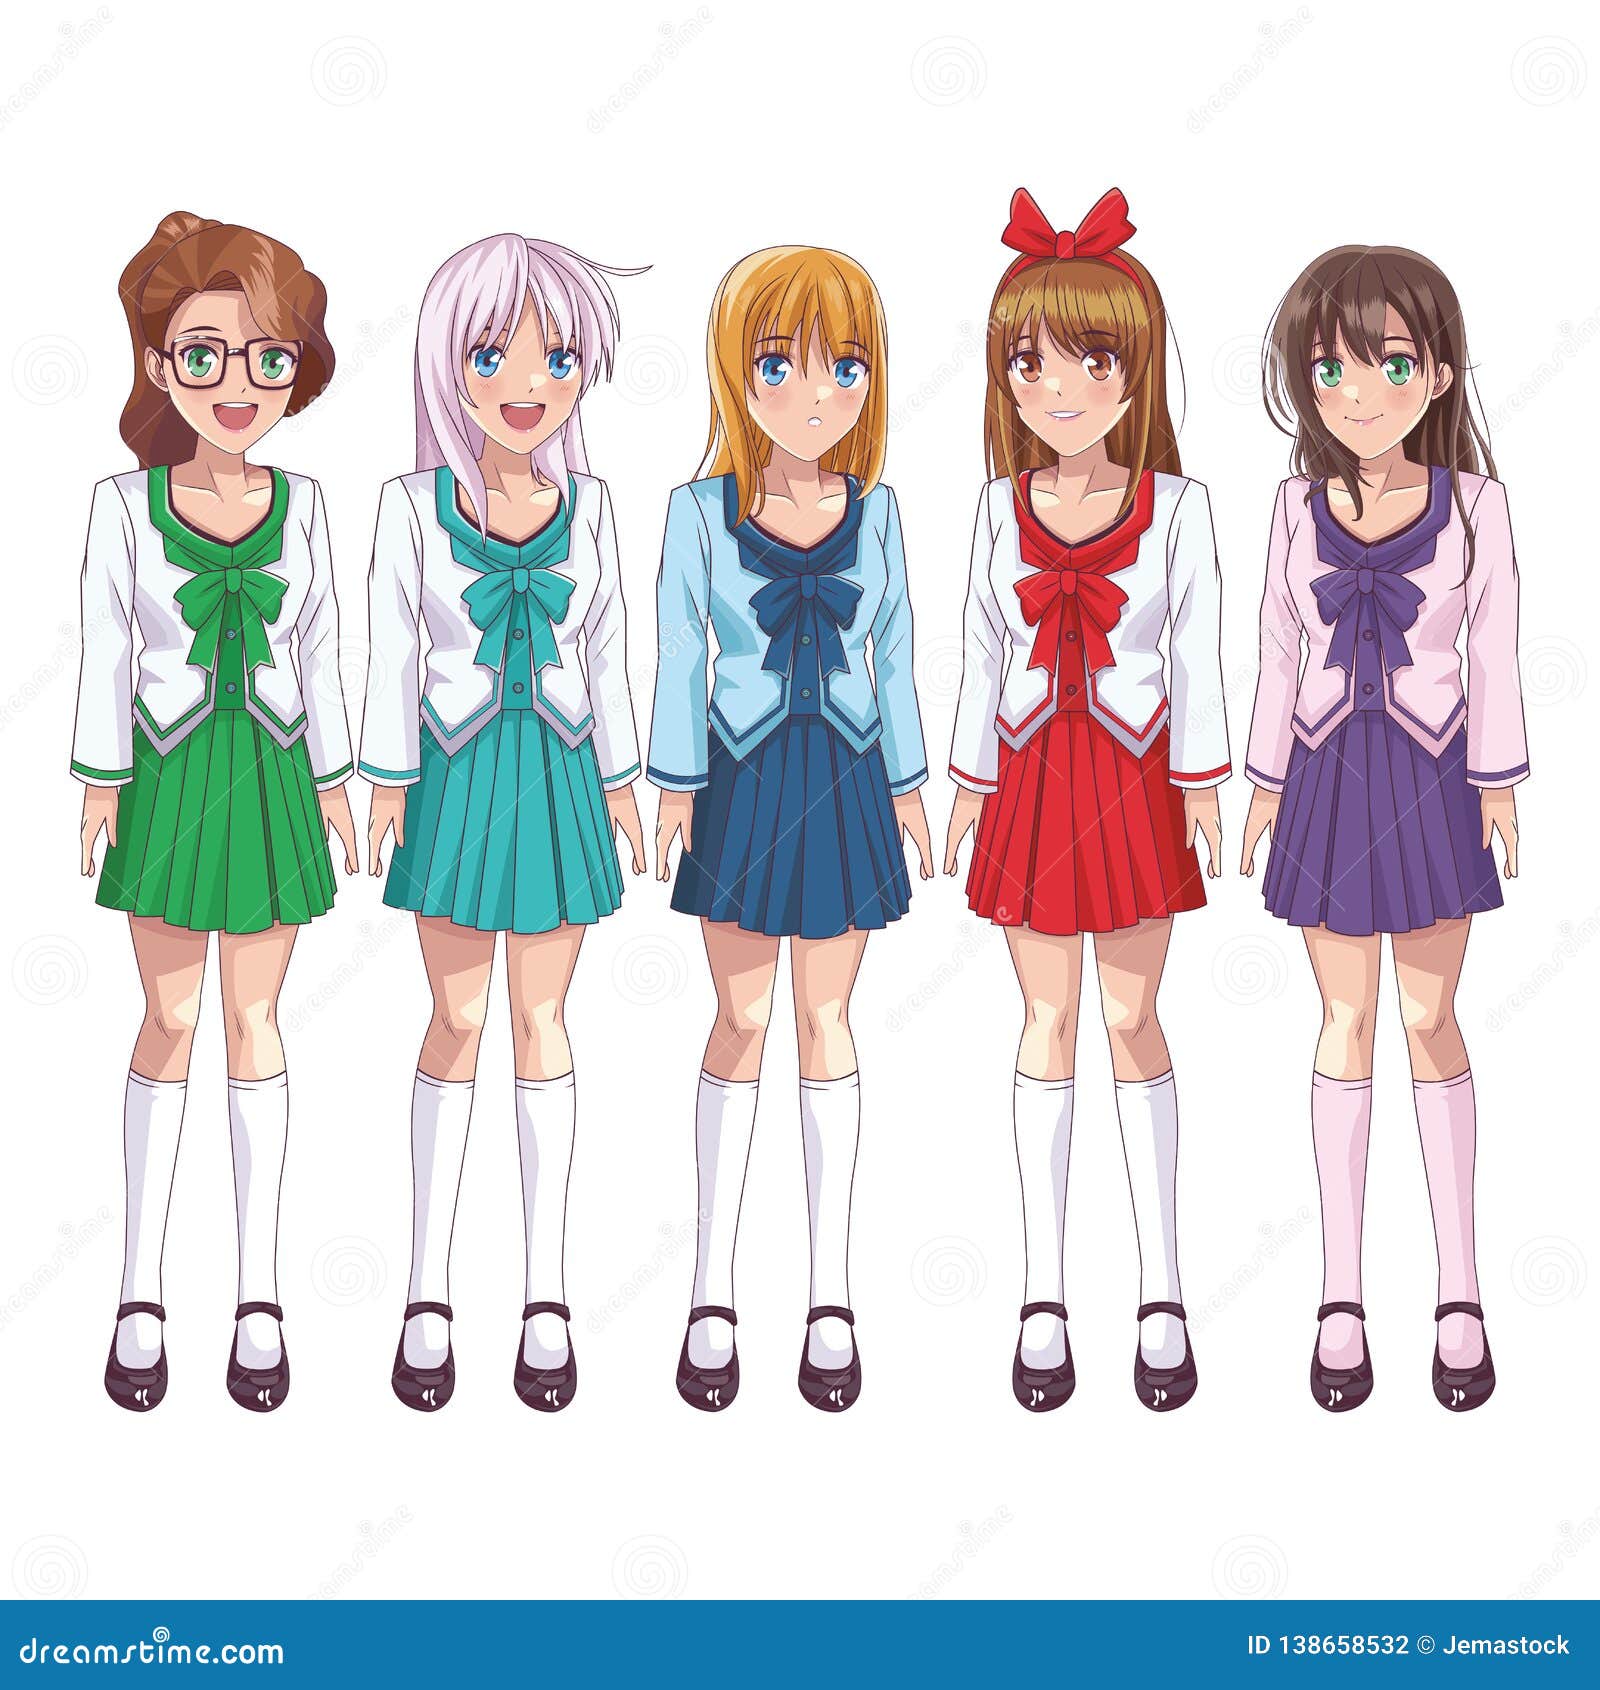 Anime manga girls stock vector. Illustration of smile - 138658279